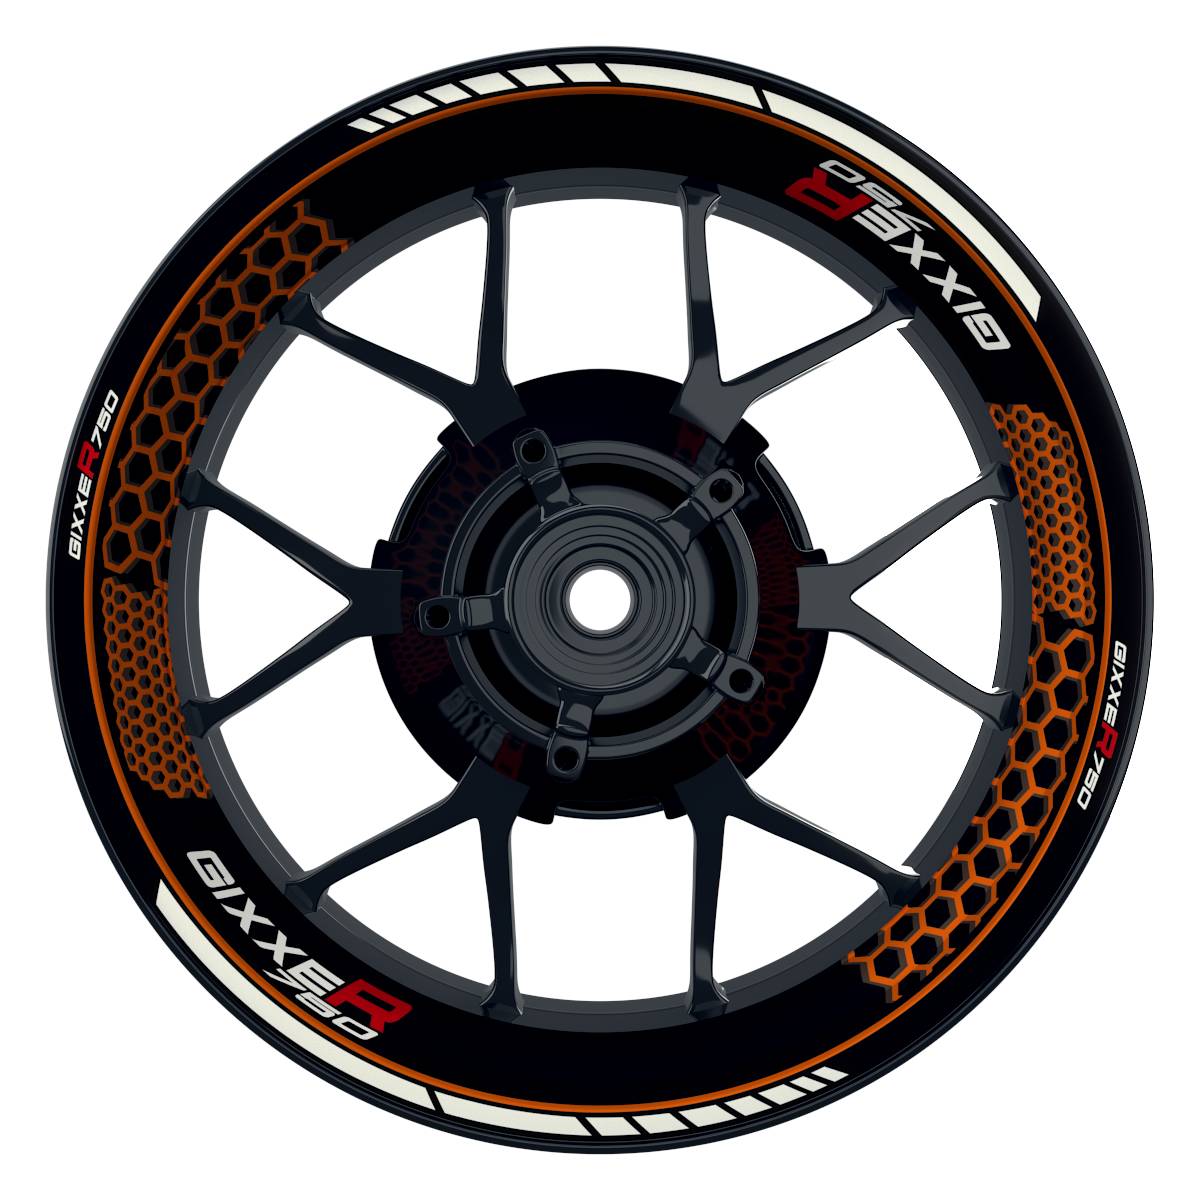 GIXXER750 Hexagon schwarz orange Wheelsticker Felgenaufkleber